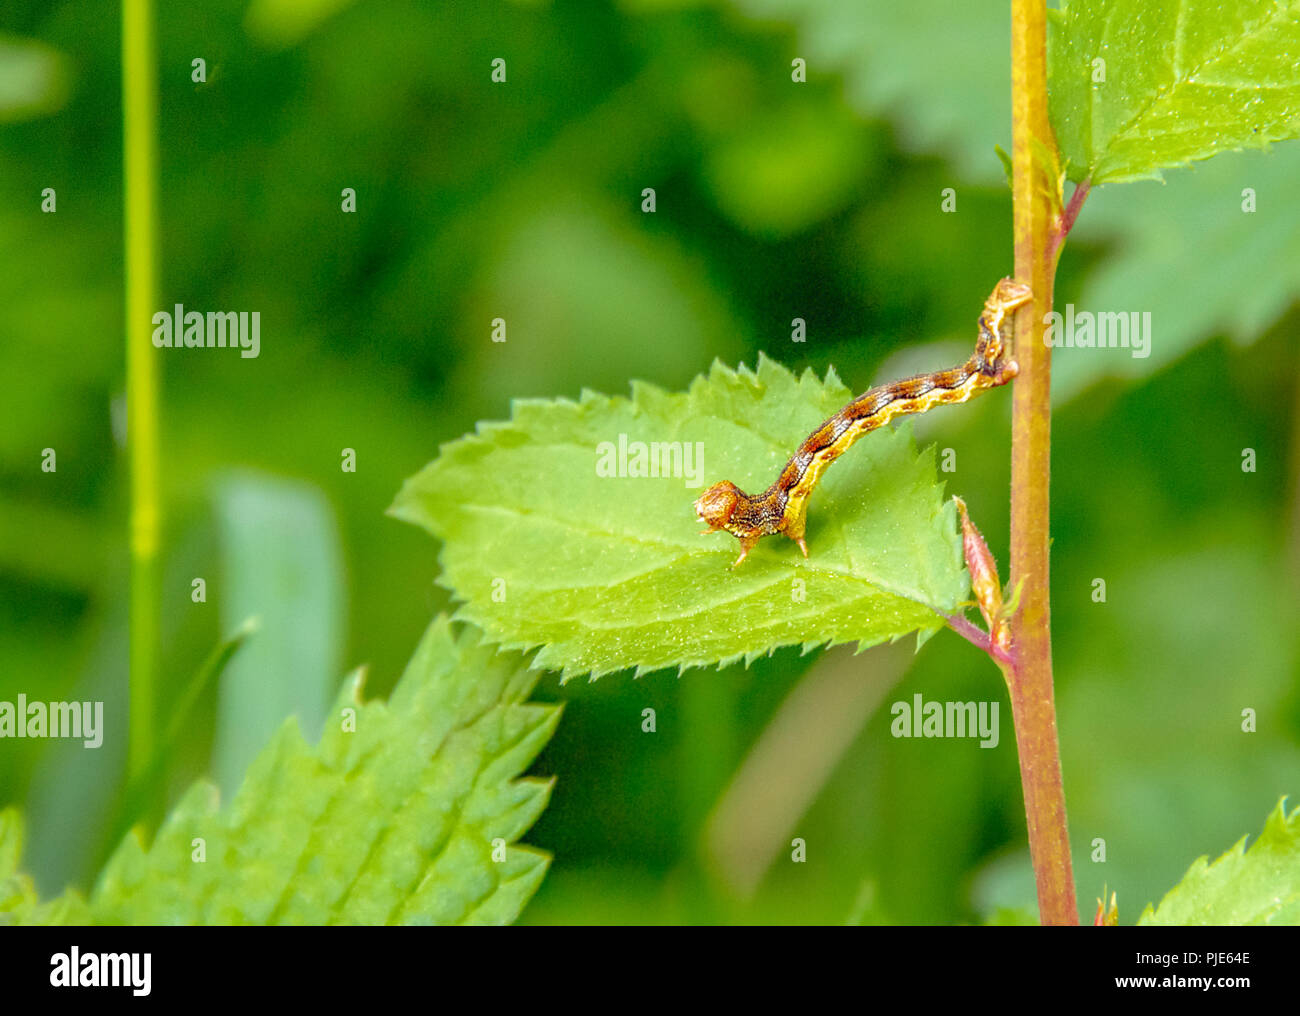 Bunt meliert Umbra Caterpillar in natürlichen, grünen leavy Ambiente Stockfoto